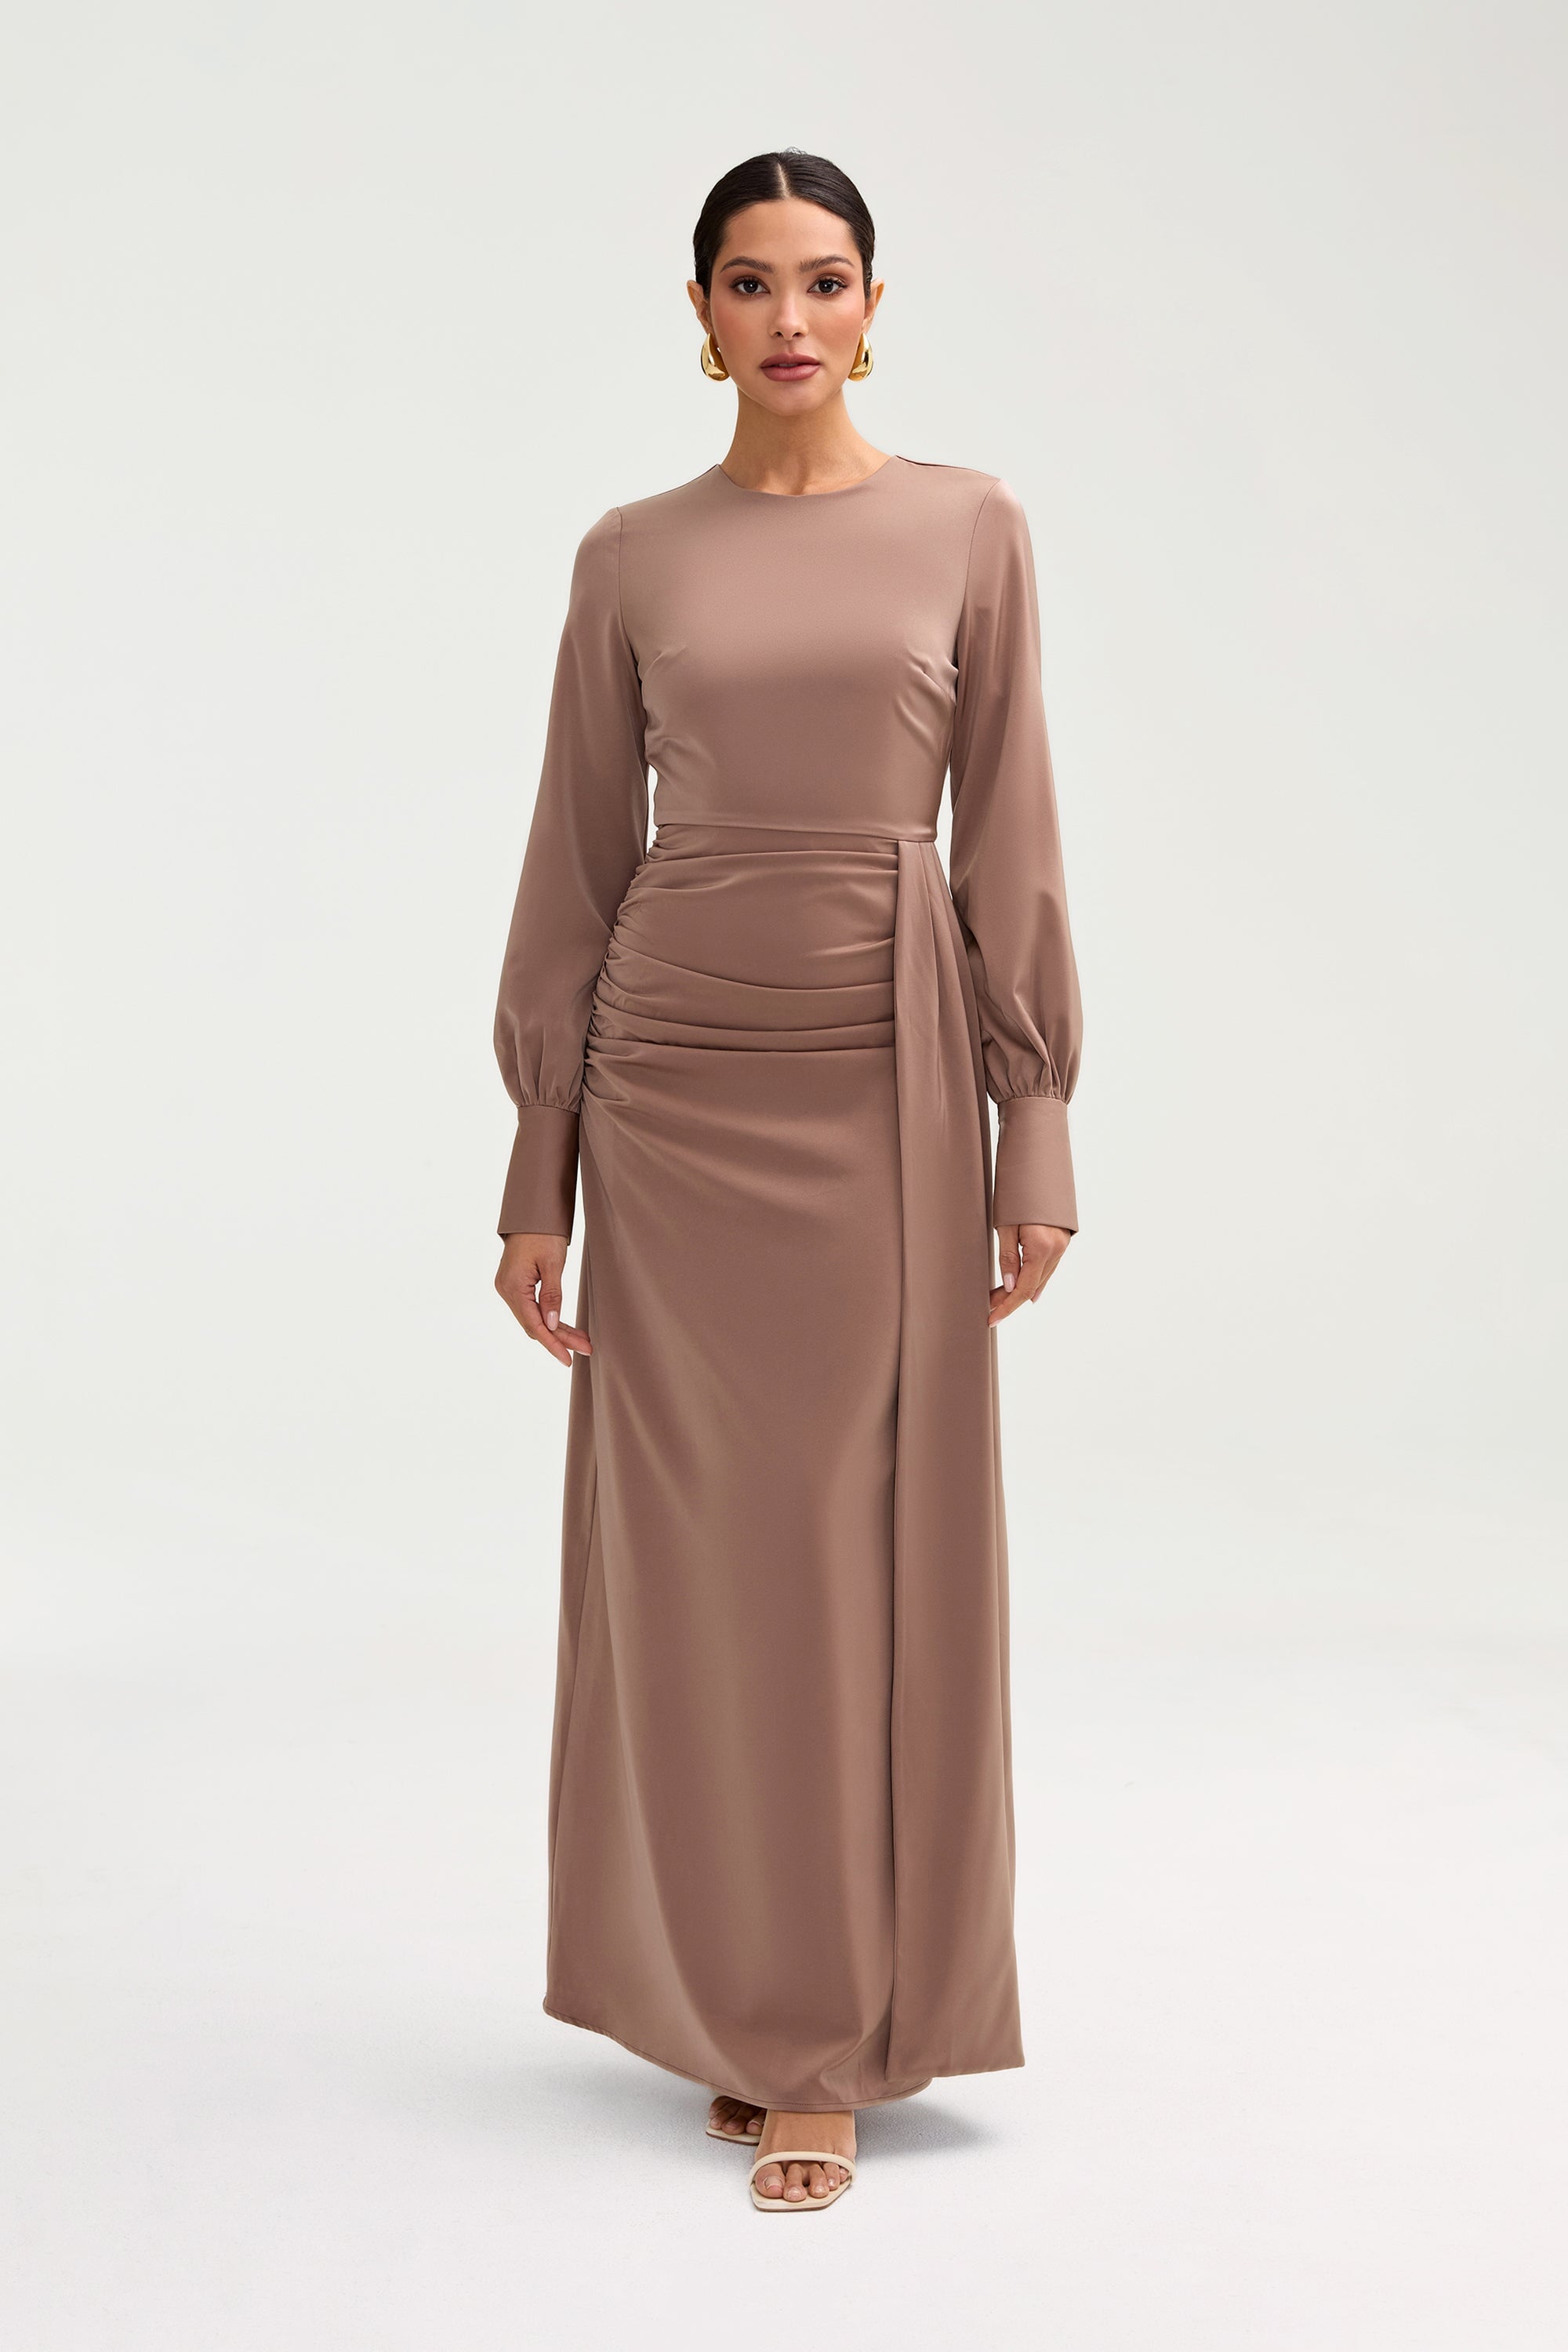 Laylani Satin Rouched Maxi Dress - Taupe Clothing saigonodysseyhotel 